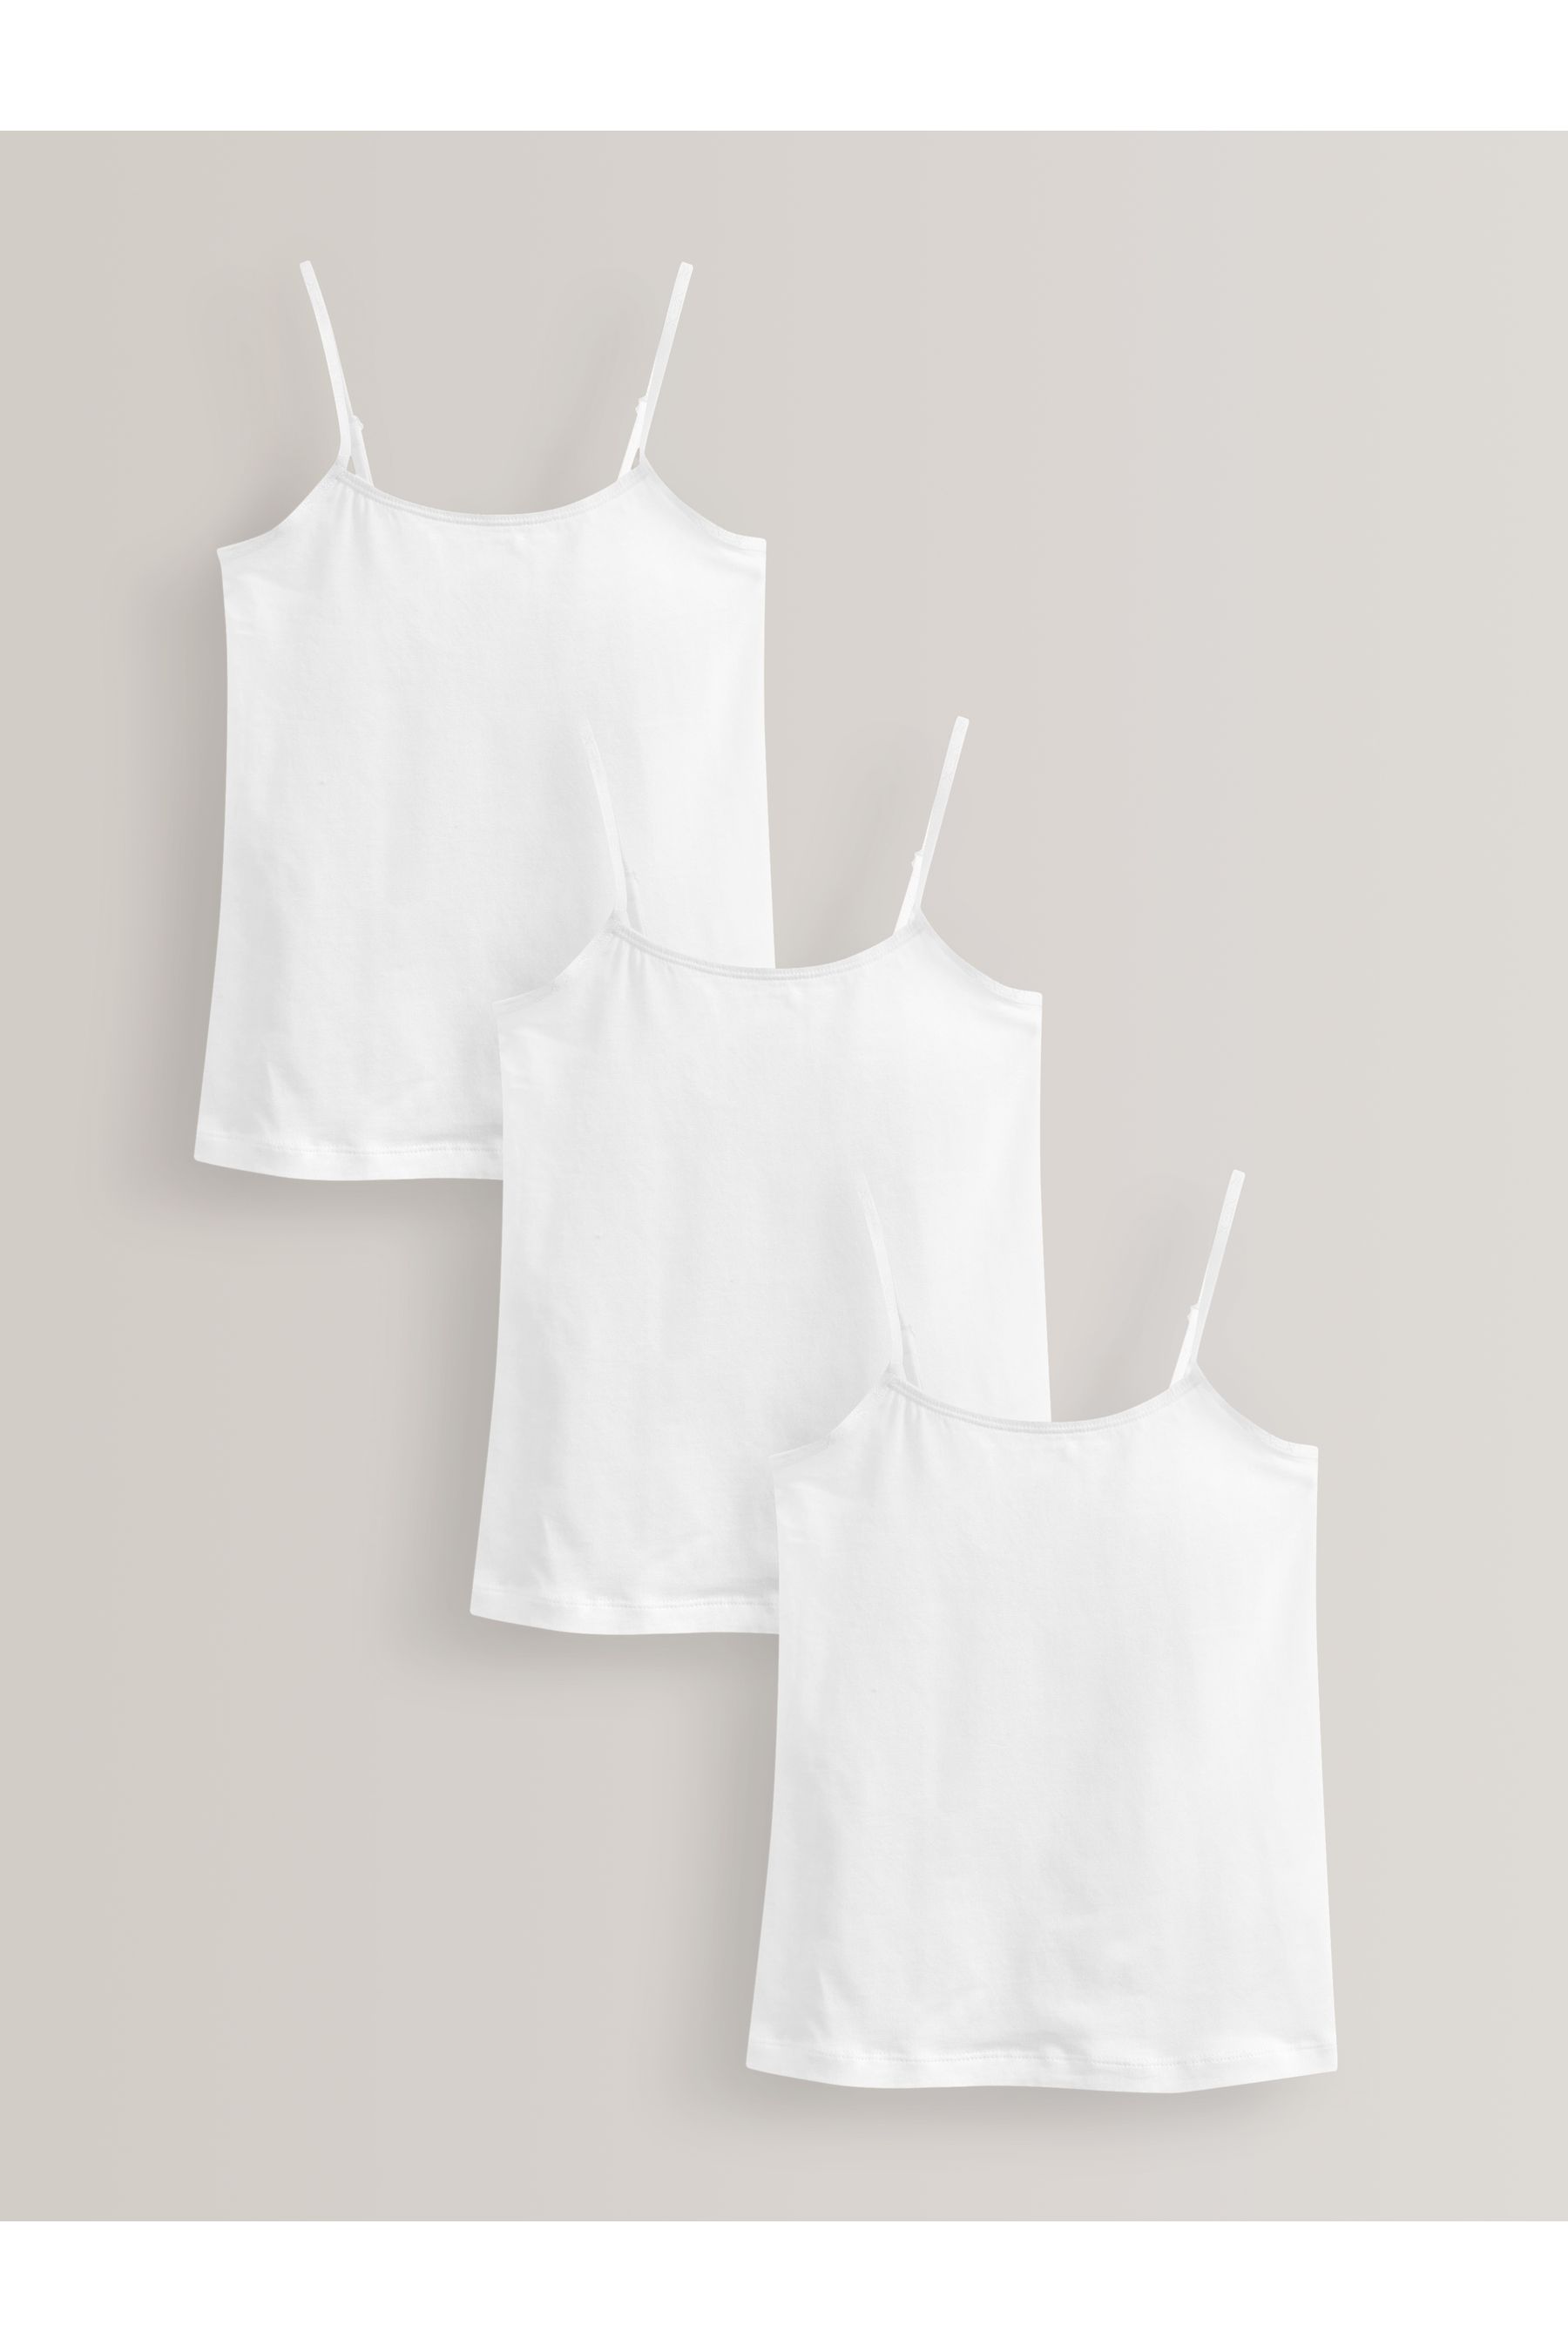 Комплект из 3 футболок на эластичных бретелях Next, белый